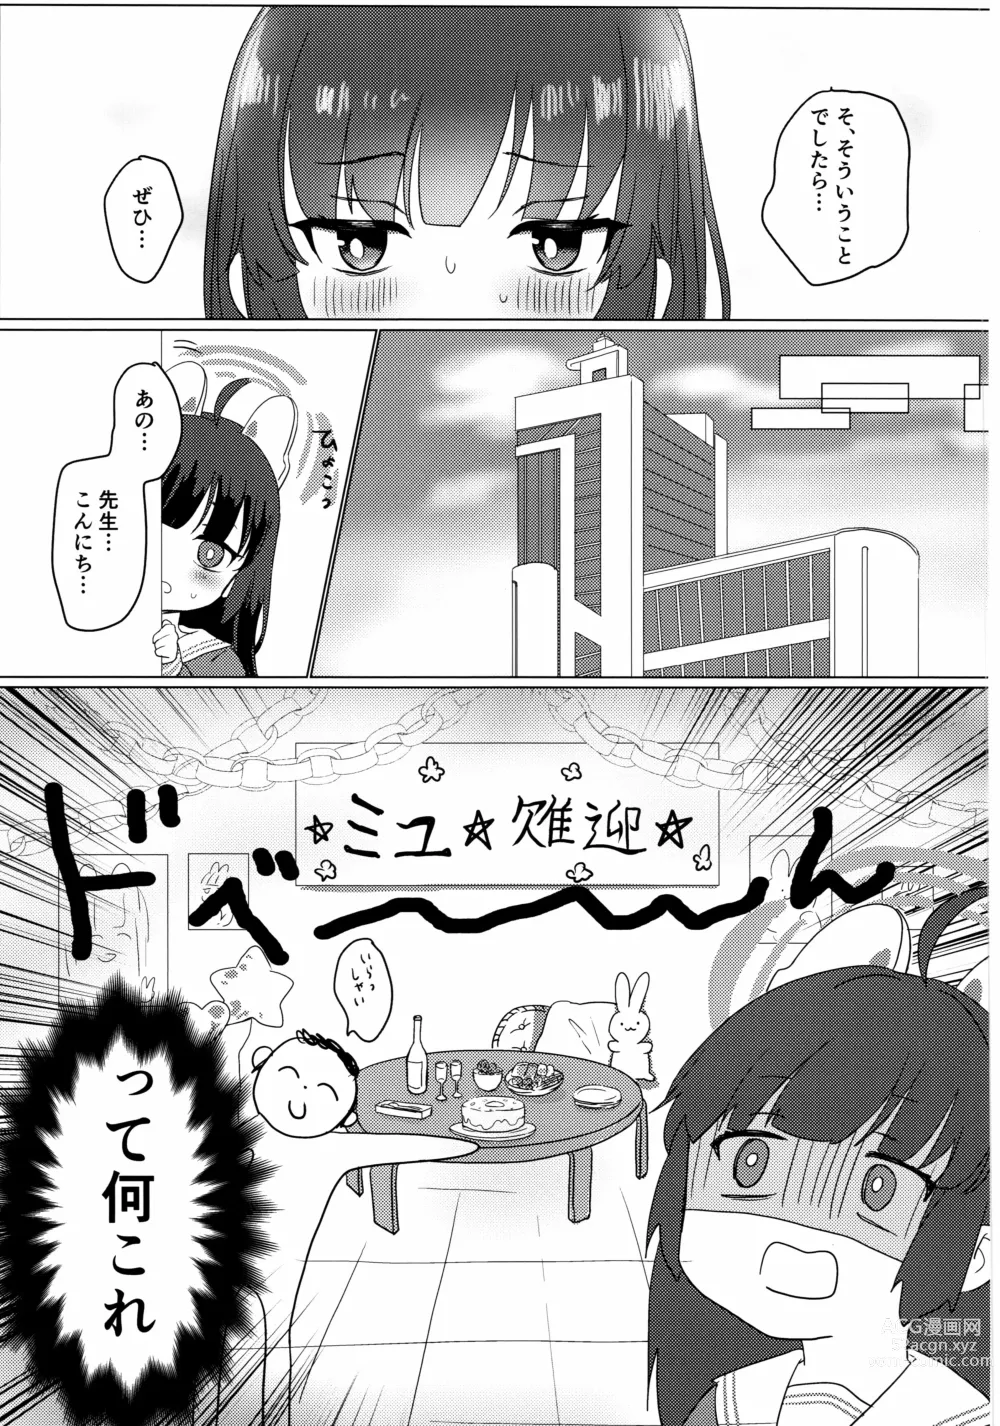 Page 4 of doujinshi Kasumizawa Miyu o Amayakashitai!